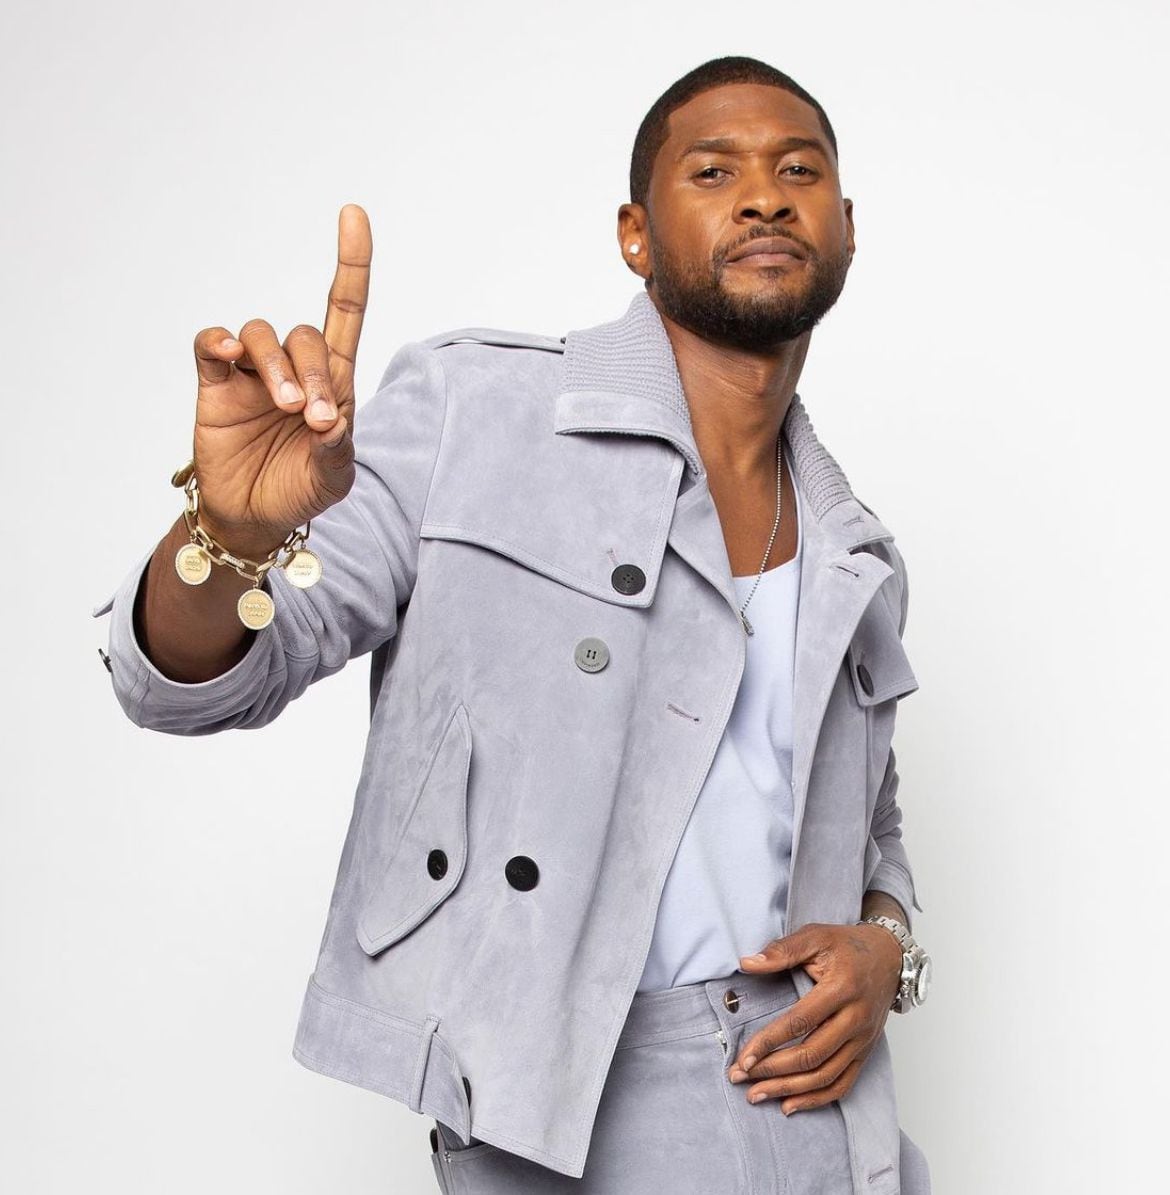 En ciertas ocasiones, Usher se ha visto envuelto en controversias. (Foto: Instagram / @usher)